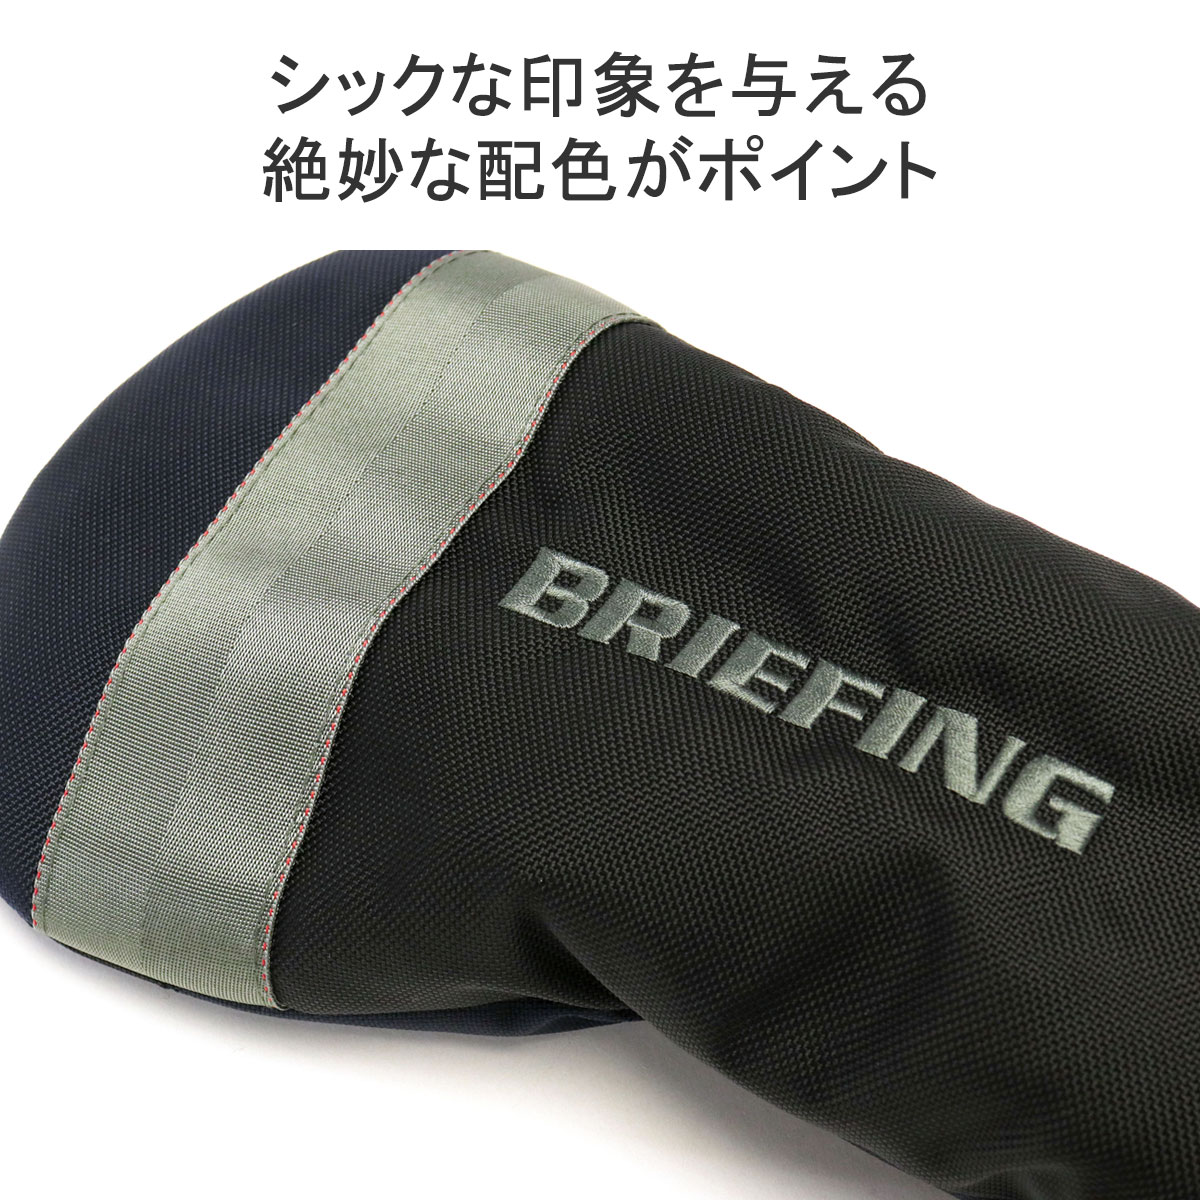 日本正規品 ブリーフィング ゴルフ ヘッドカバー BRIEFING GOLF MULTI COLOR COLLECTION DRIVER COVER  AIR ドライバーカバー 25周年 限定 BRG231G74